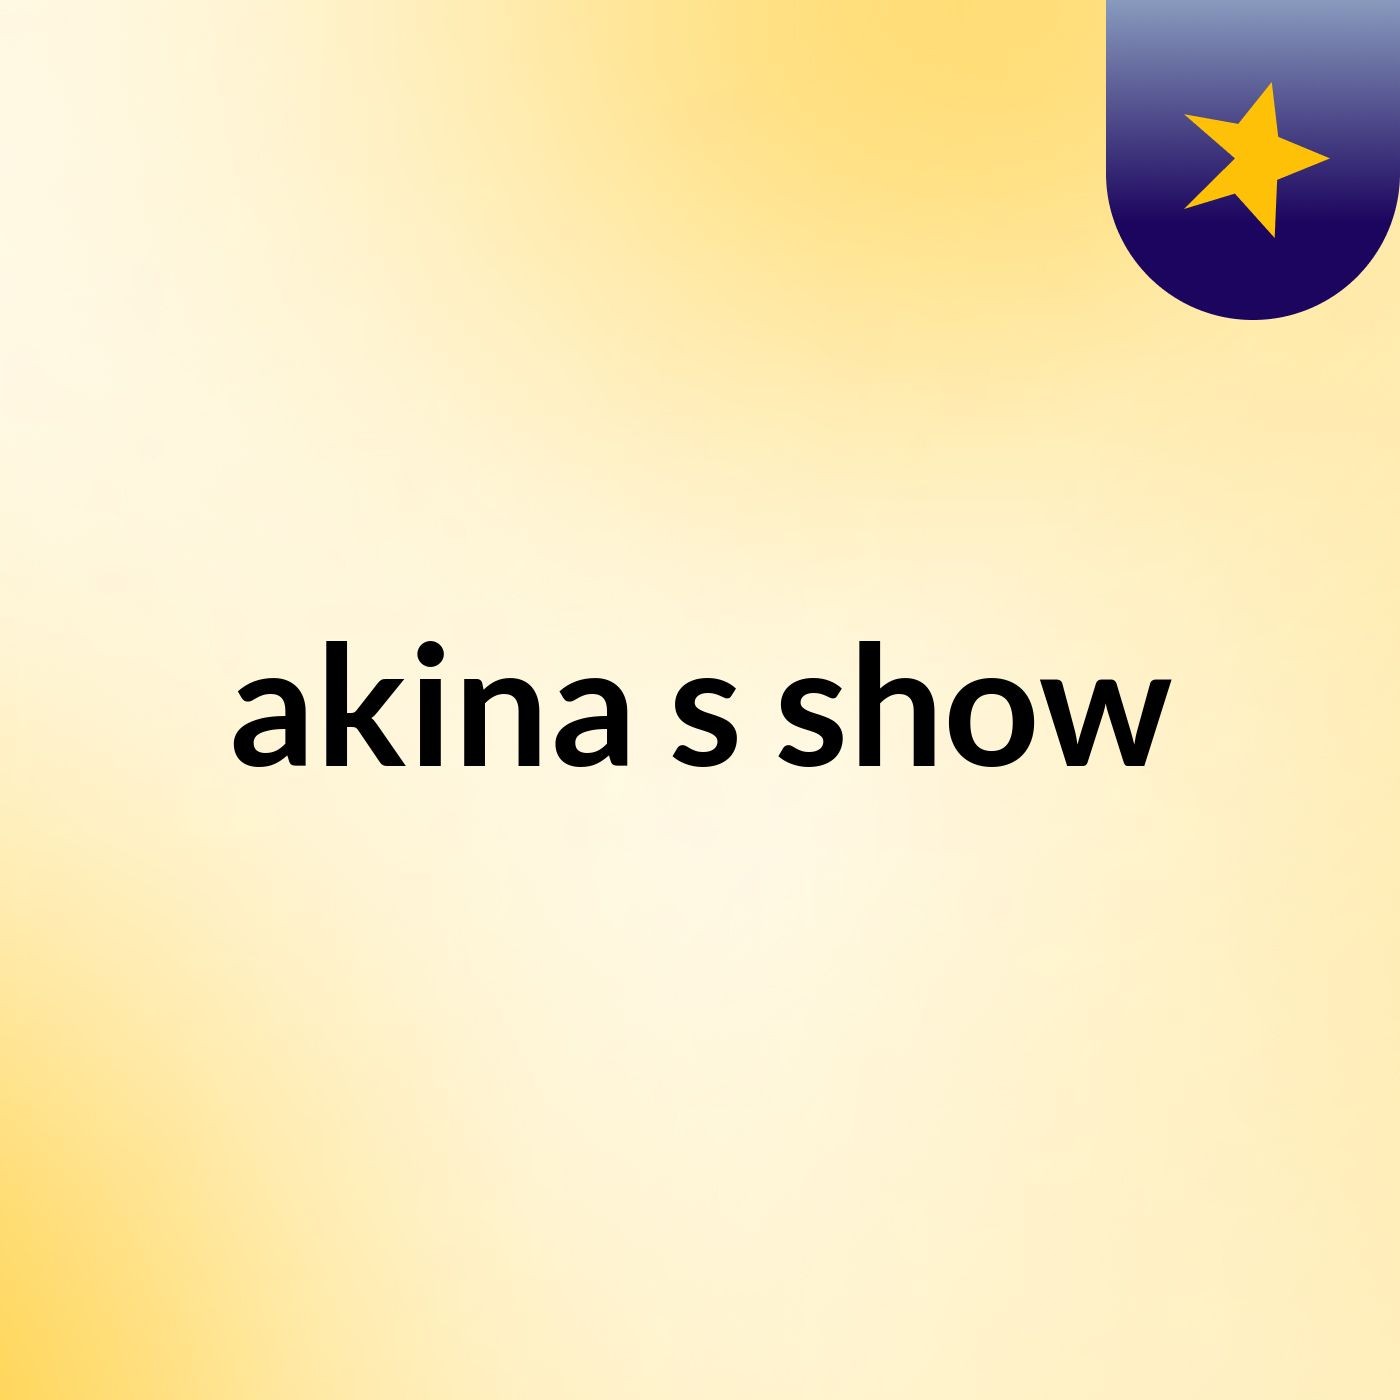 akina's show